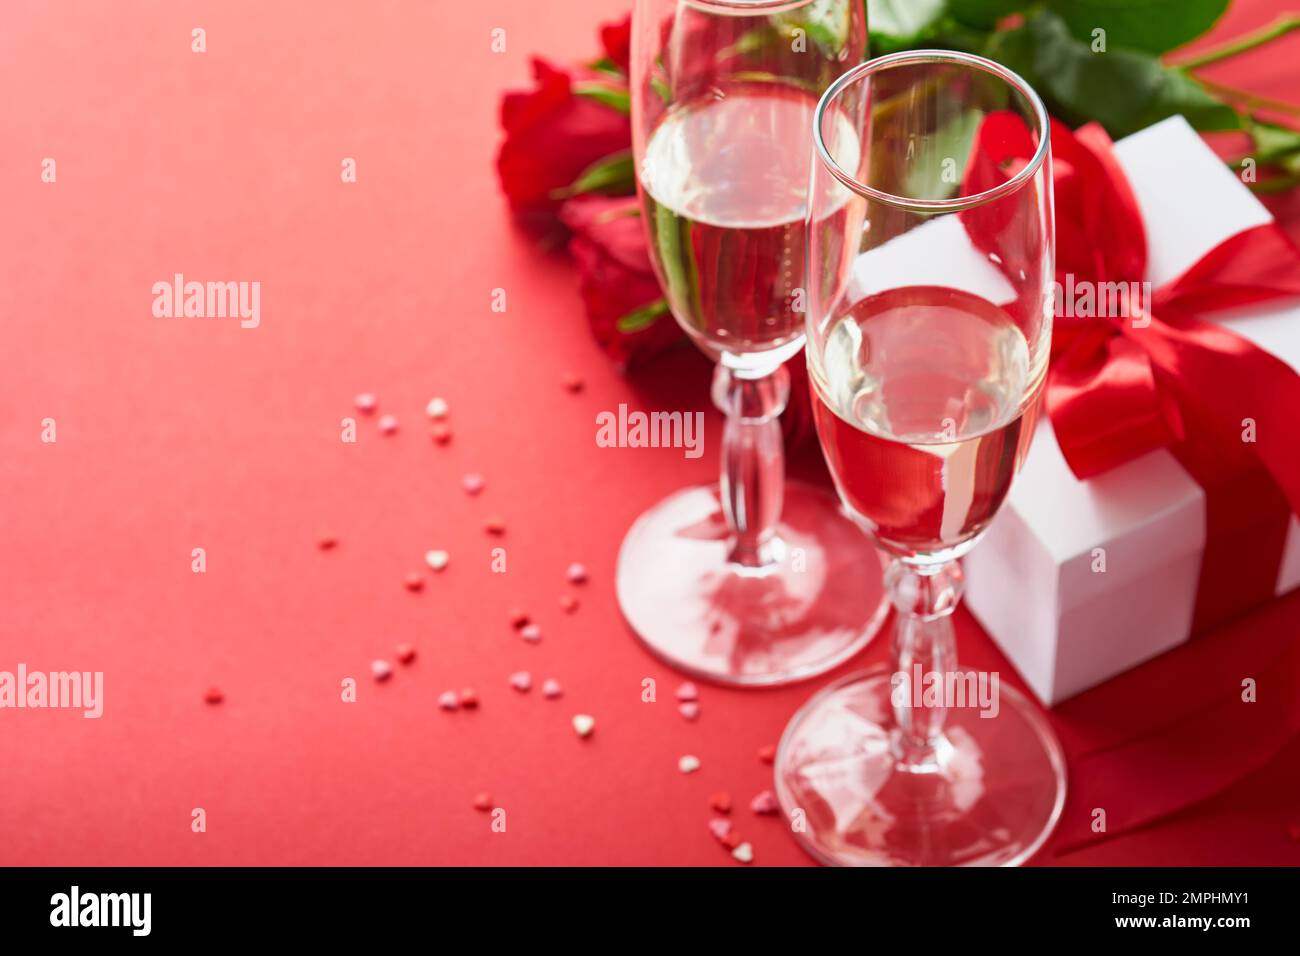 Concept de la Saint-Valentin ou dîner romantique. Décor romantique de table, argenterie, verres à vin, boîte cadeau, roses et symbole de l'amour coeur rouge sur le dos rouge Banque D'Images